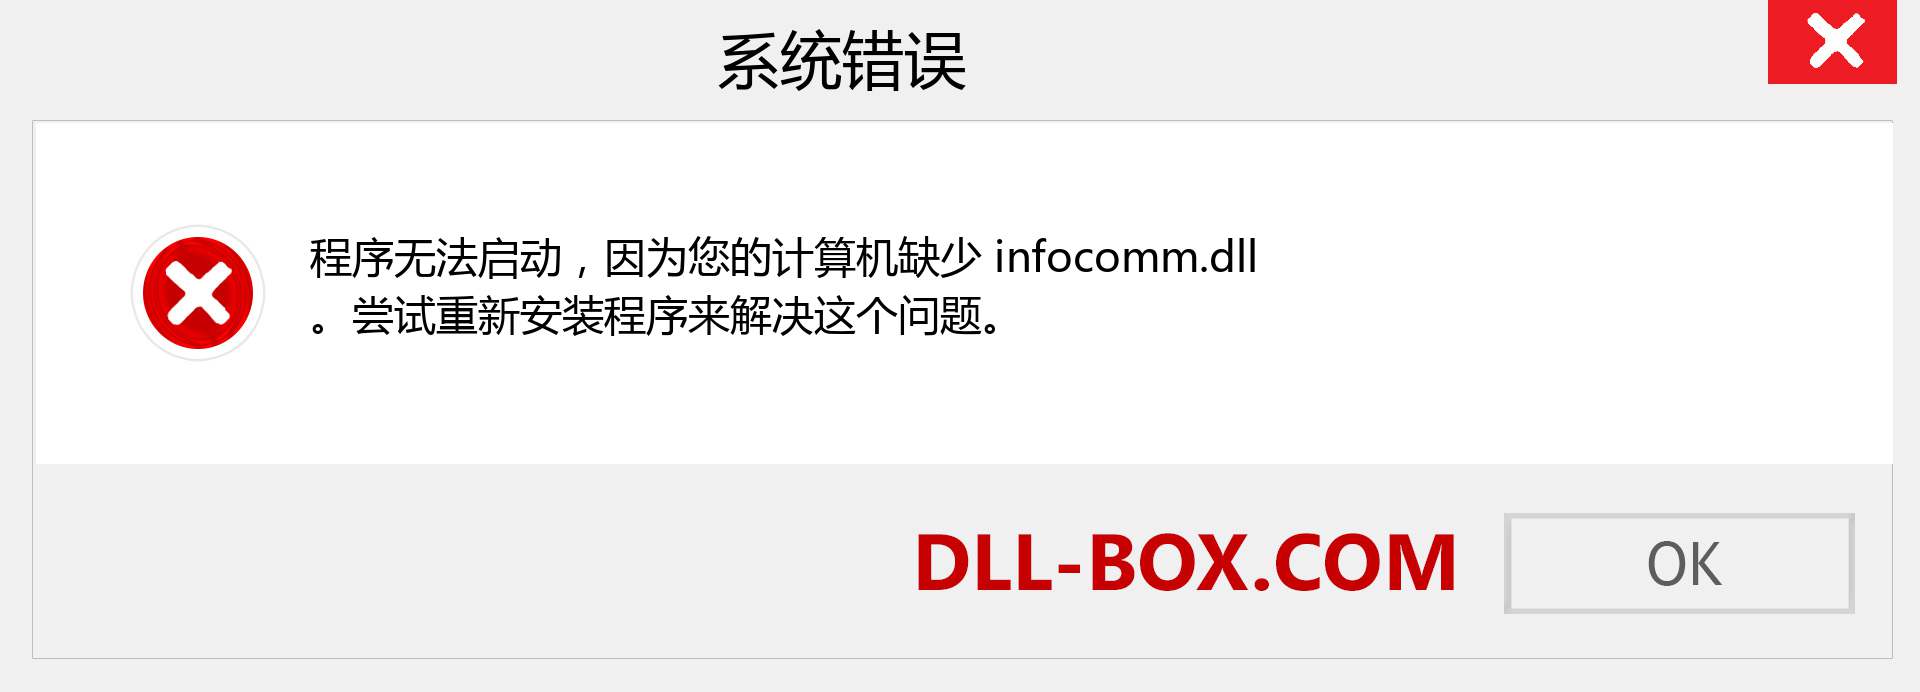 infocomm.dll 文件丢失？。 适用于 Windows 7、8、10 的下载 - 修复 Windows、照片、图像上的 infocomm dll 丢失错误